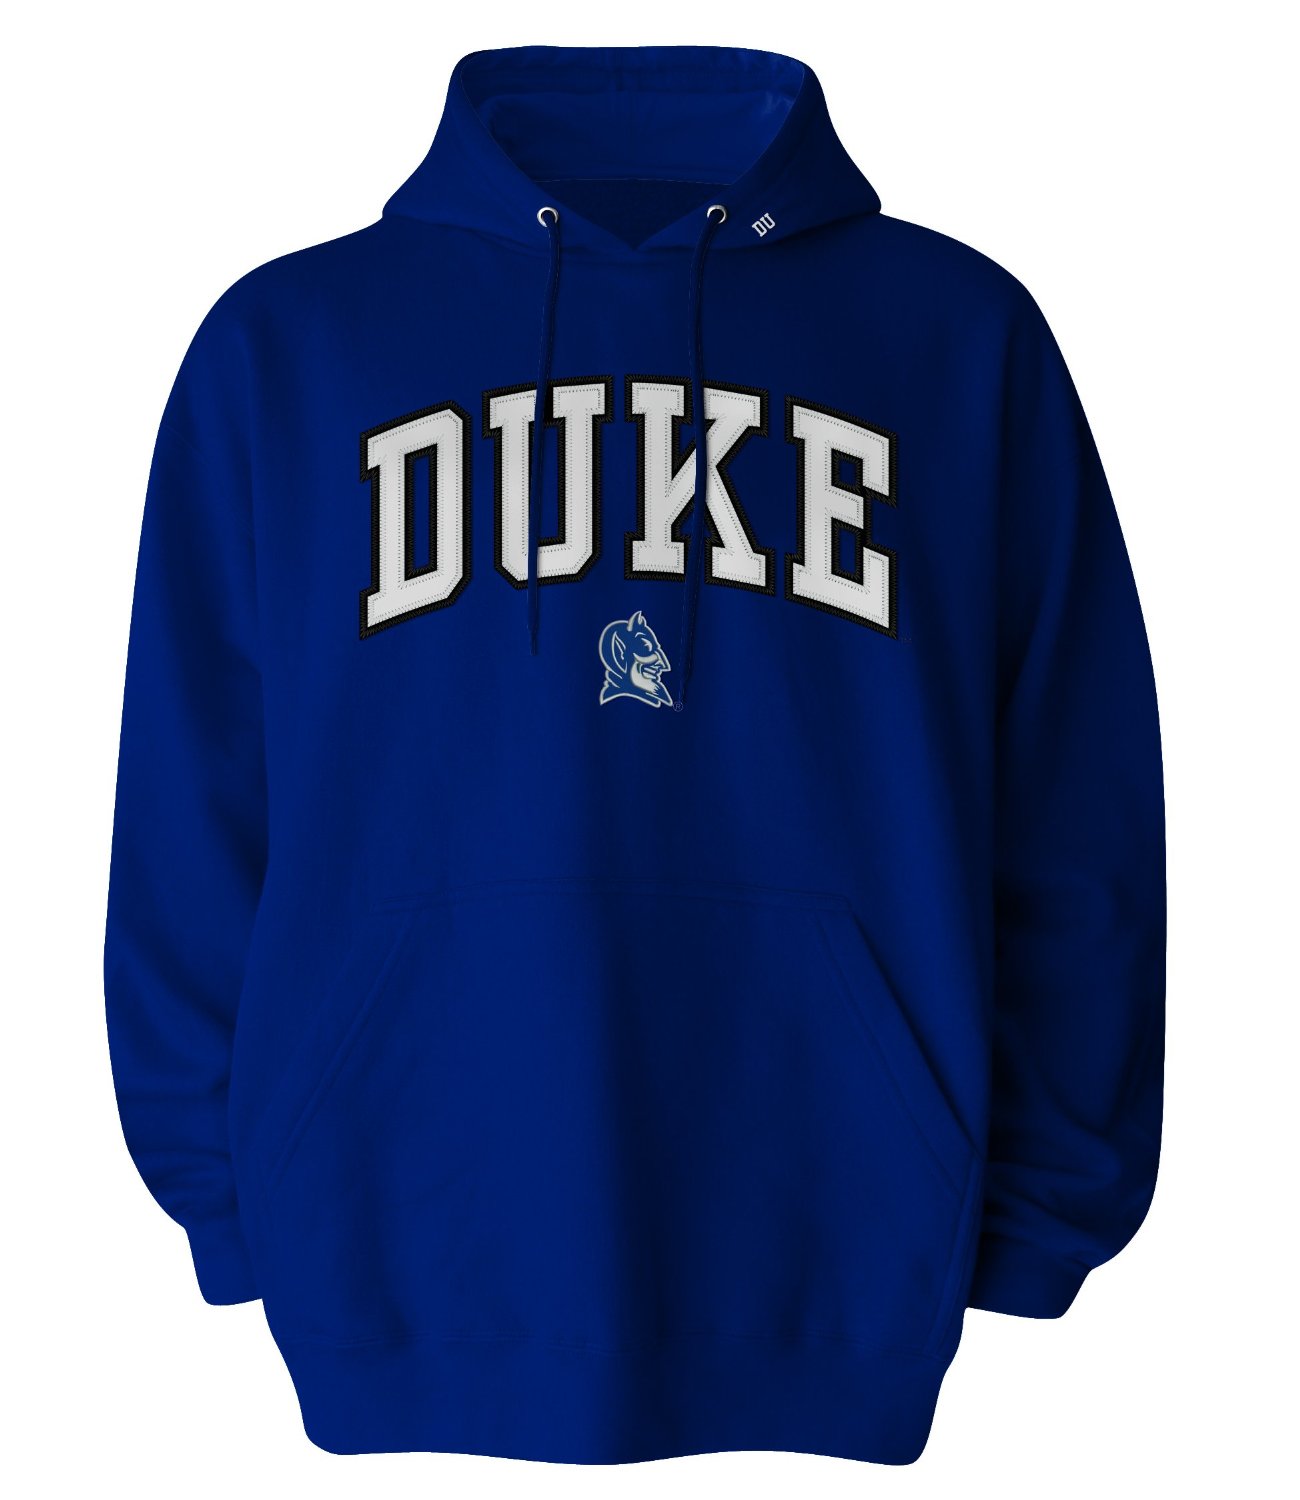 Duke Blue Devils - NCAA / Fan Shop: Sports & Outdoors - ClipArt Best ...